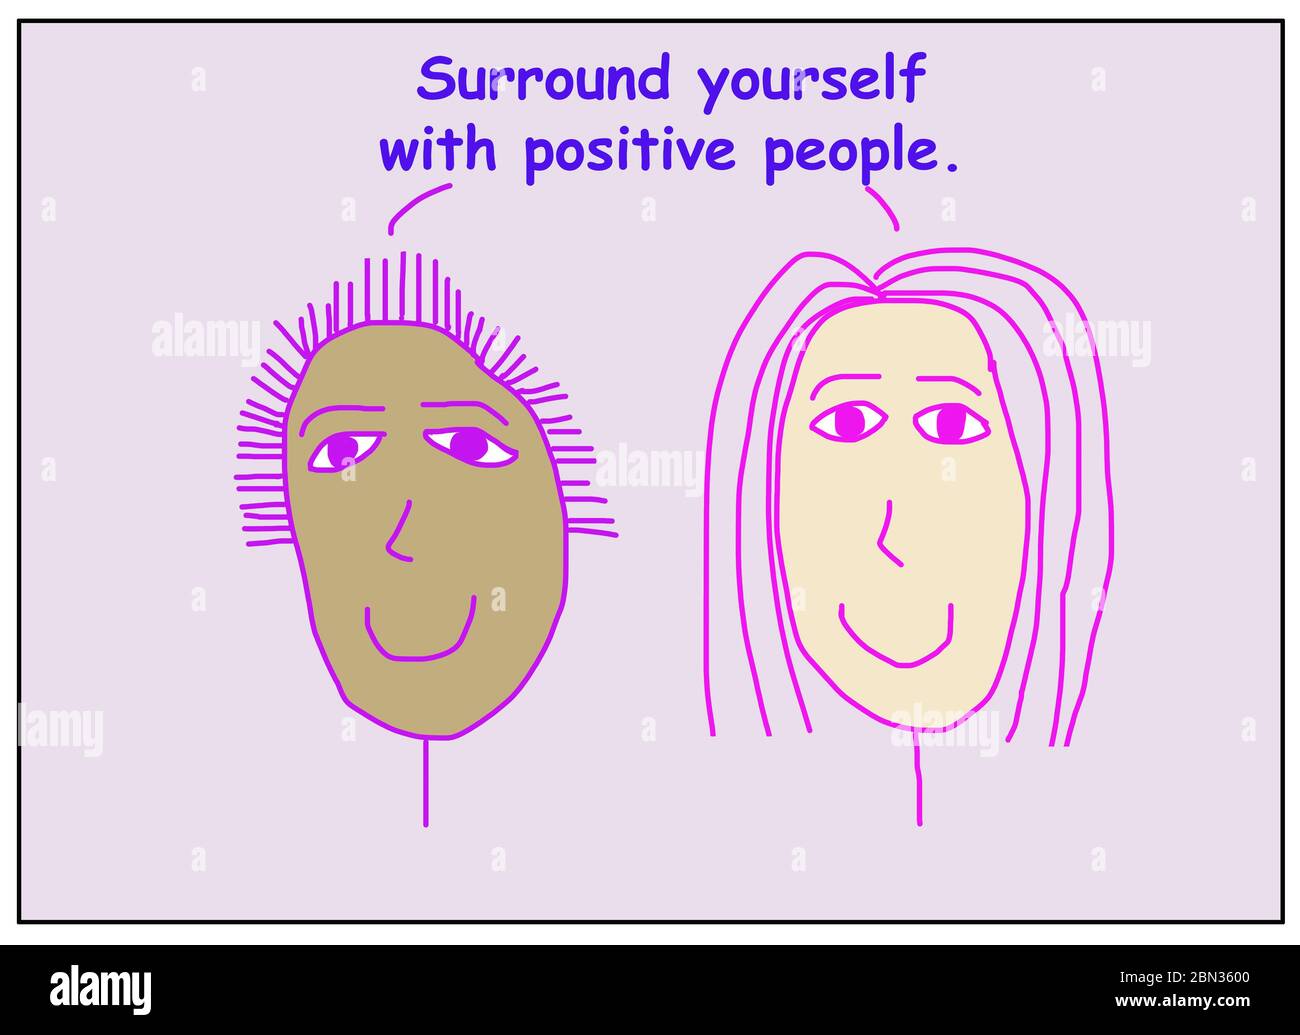 Farbe Cartoon zeigt zwei lächelnde und ethnisch verschiedene Frauen sagen, um sich mit positiven Menschen umgeben. Stockfoto